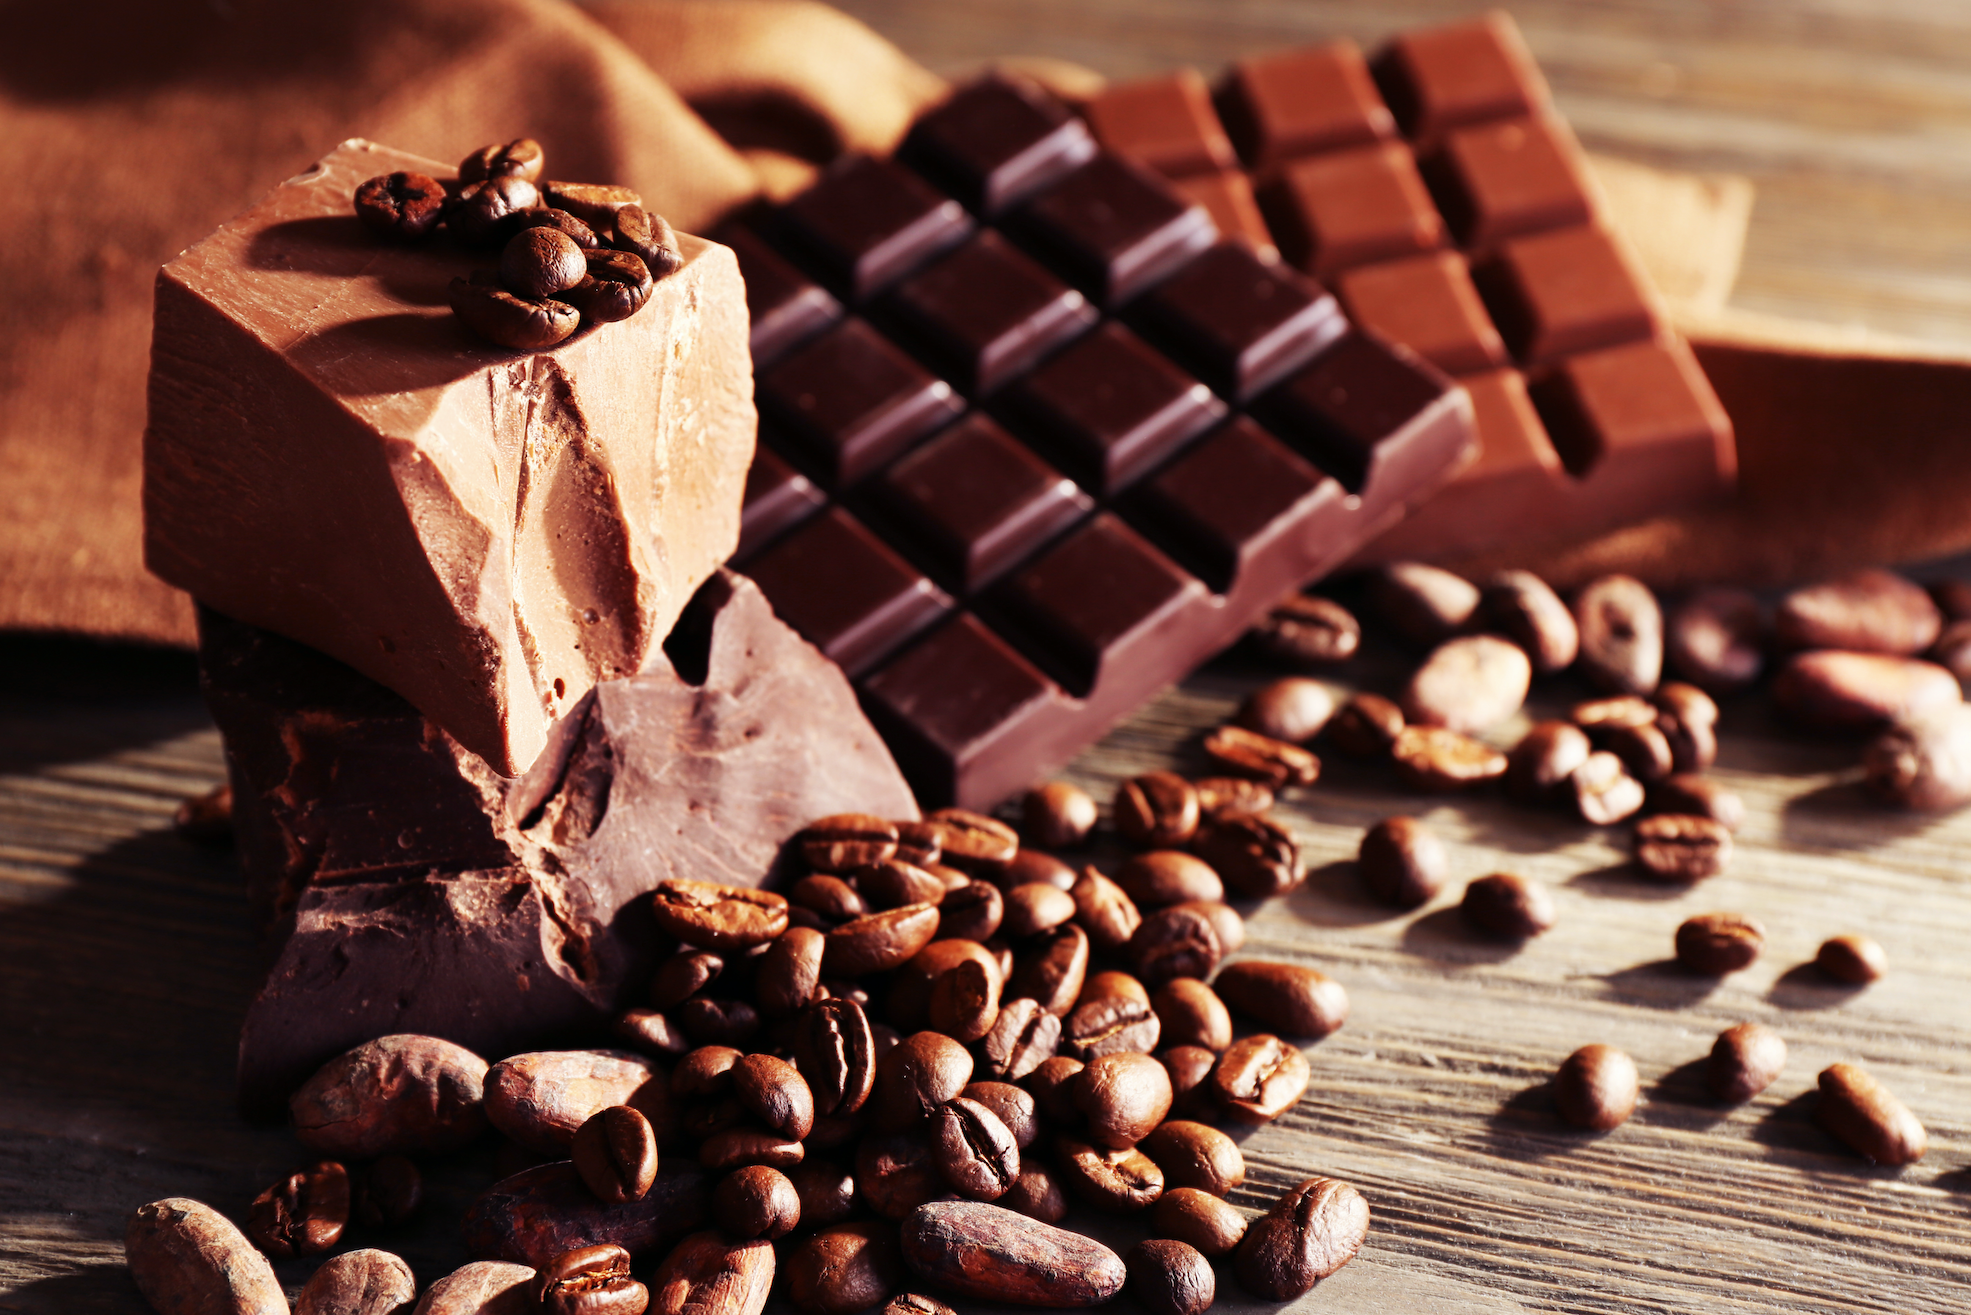 Зерна шоколада. Кофе и шоколад. Кофе и плитка шоколада. Кофе с шоколадкой. Кофейные зерна в шоколаде.